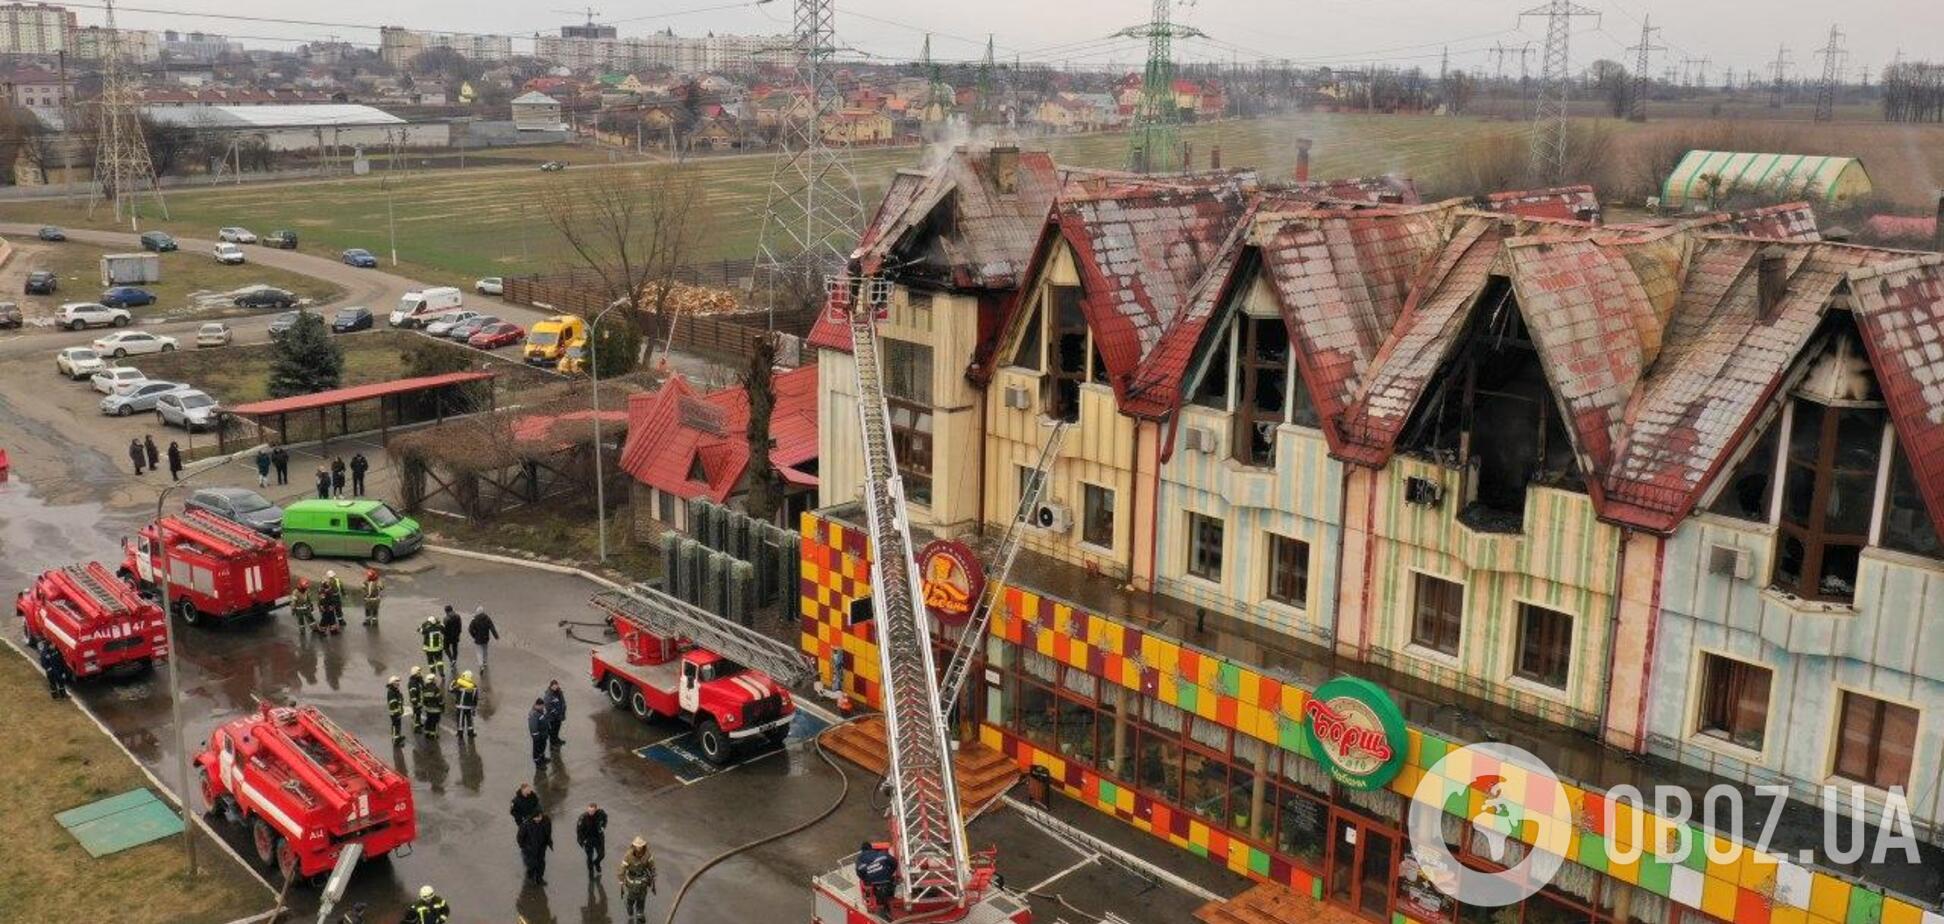 Под Киевом загорелся отель возле АЗС: все детали, фото и видео